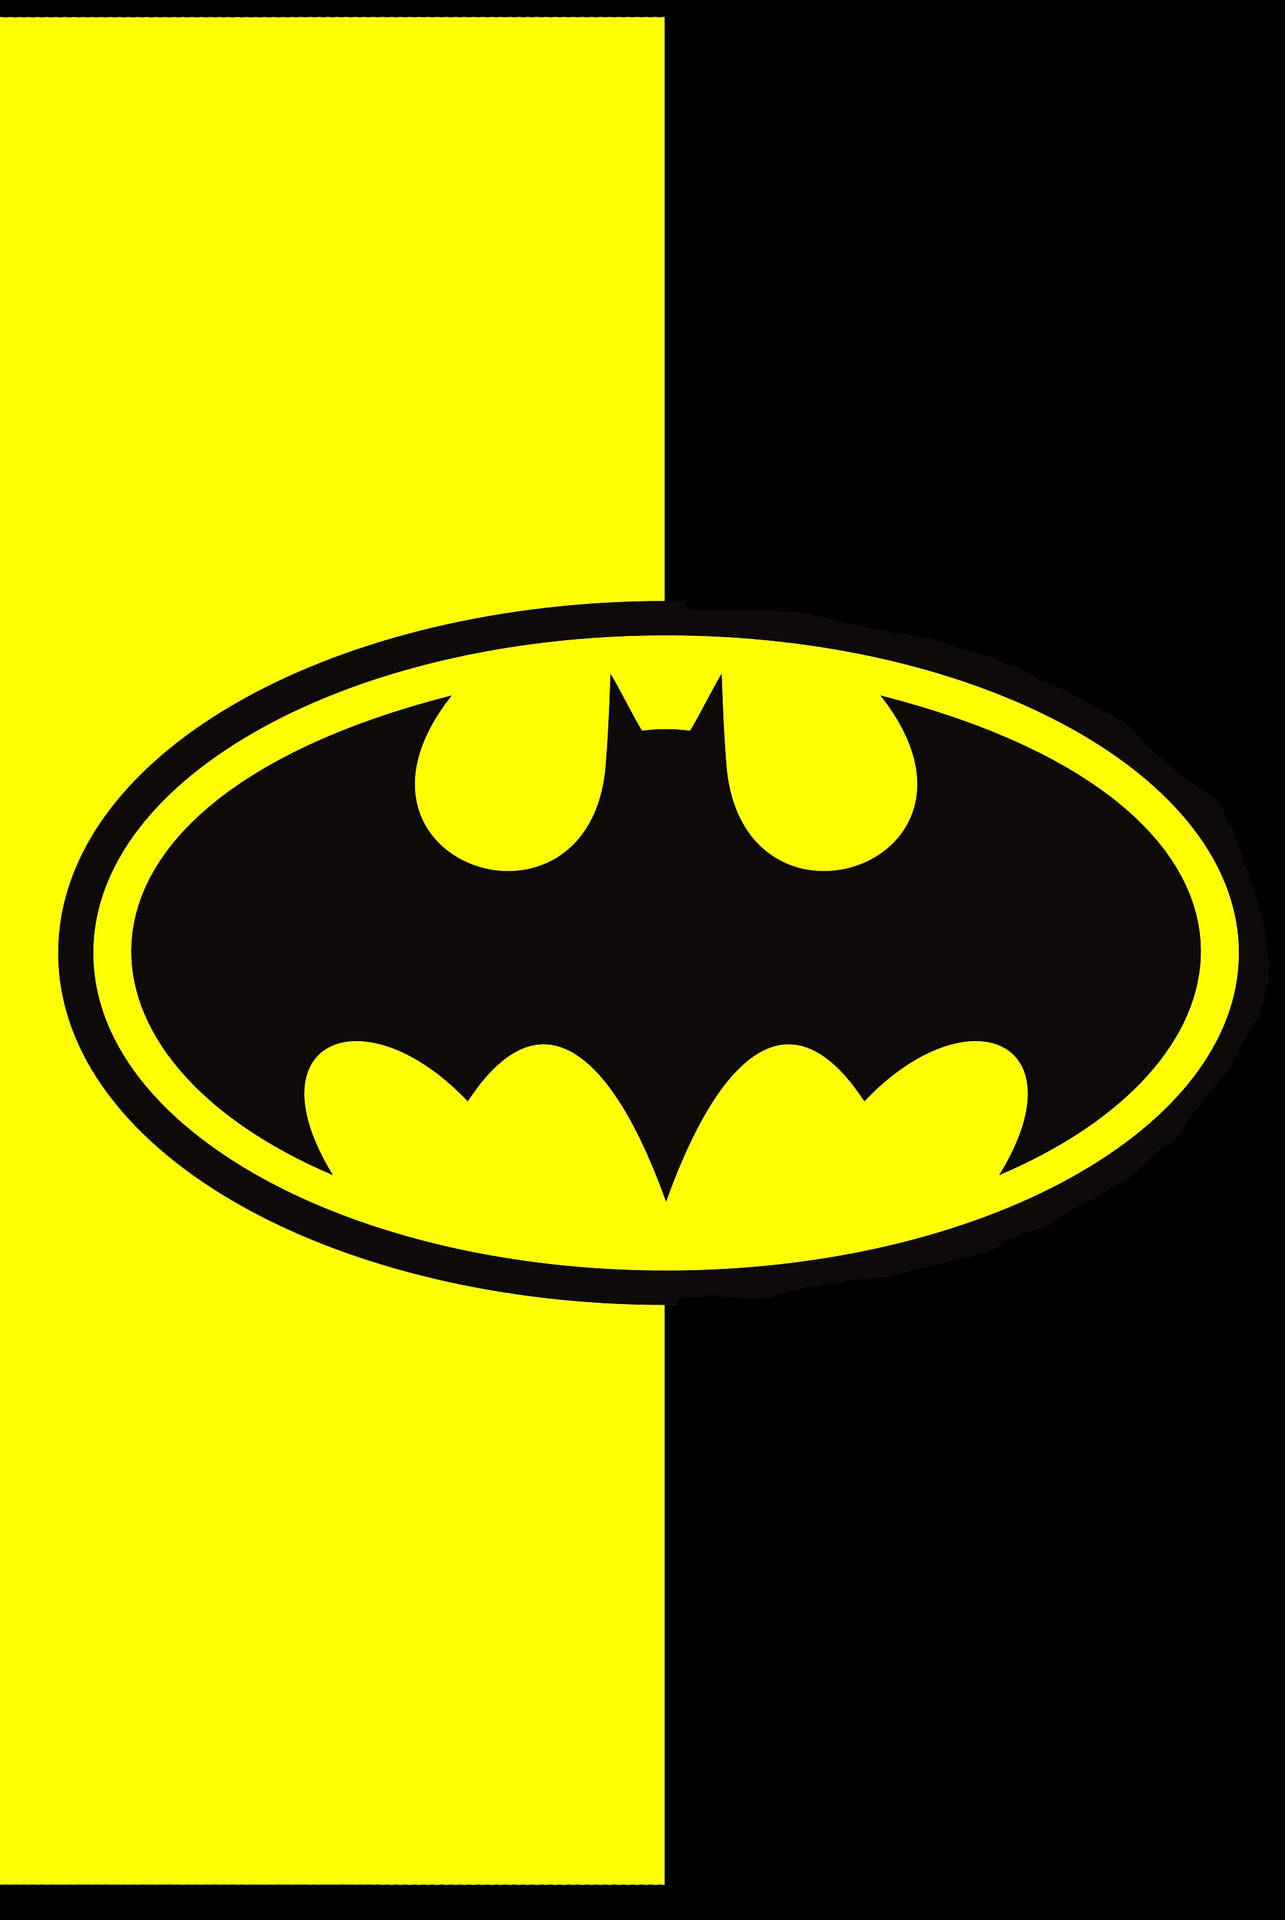 Schwarzesund Gelbes Batman-logo Für Das Iphone Wallpaper